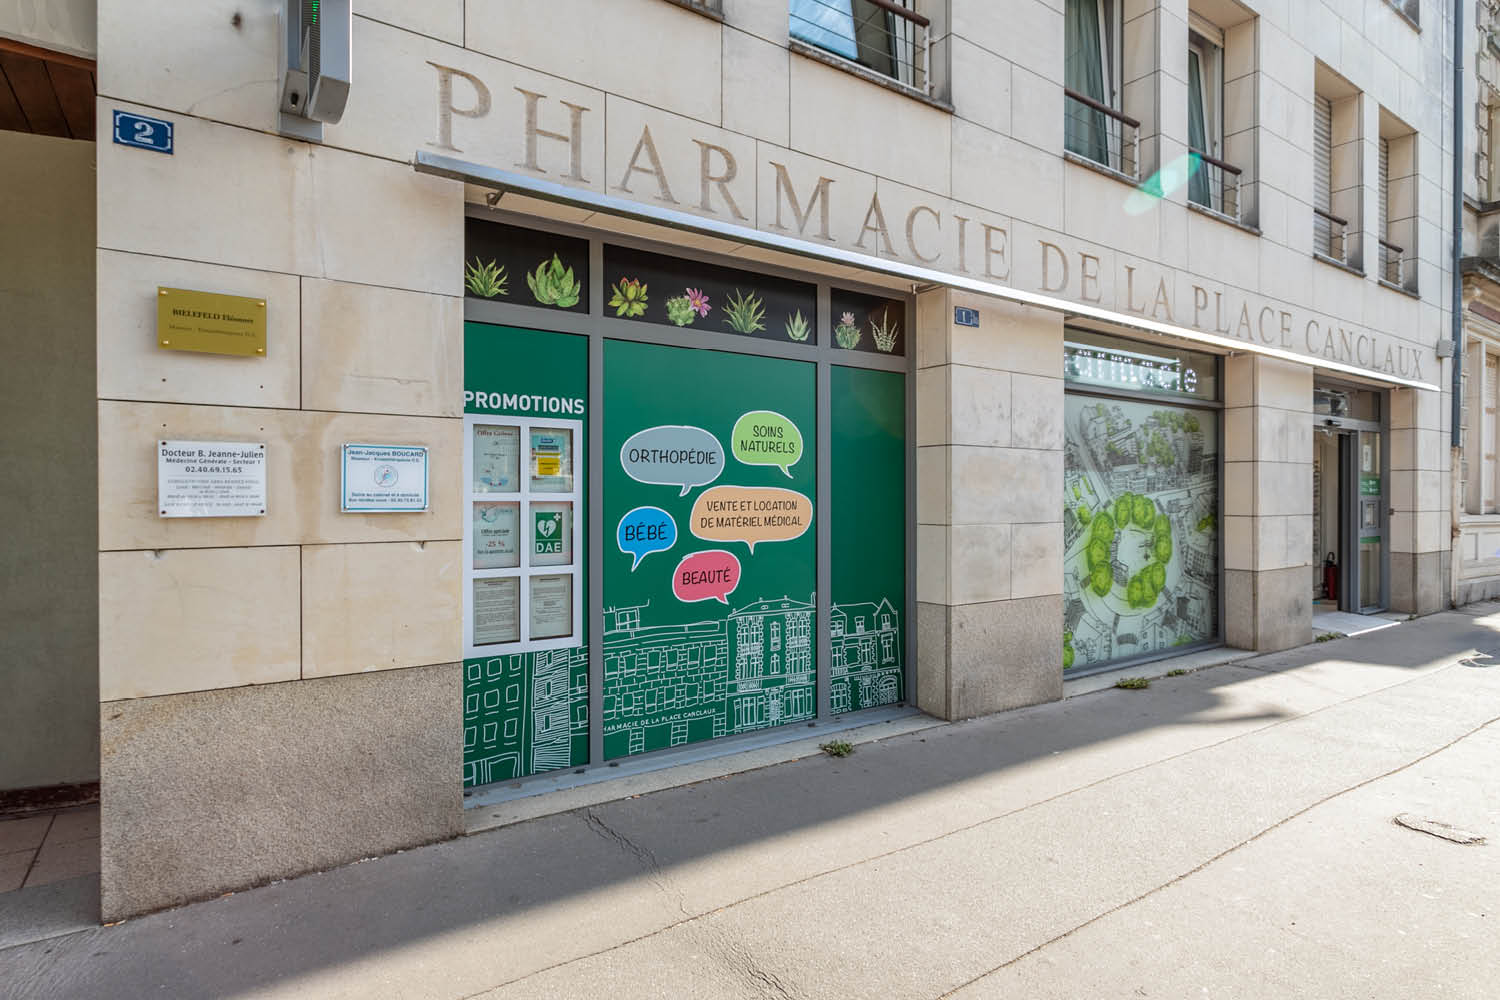 Pharmacie Canclaux